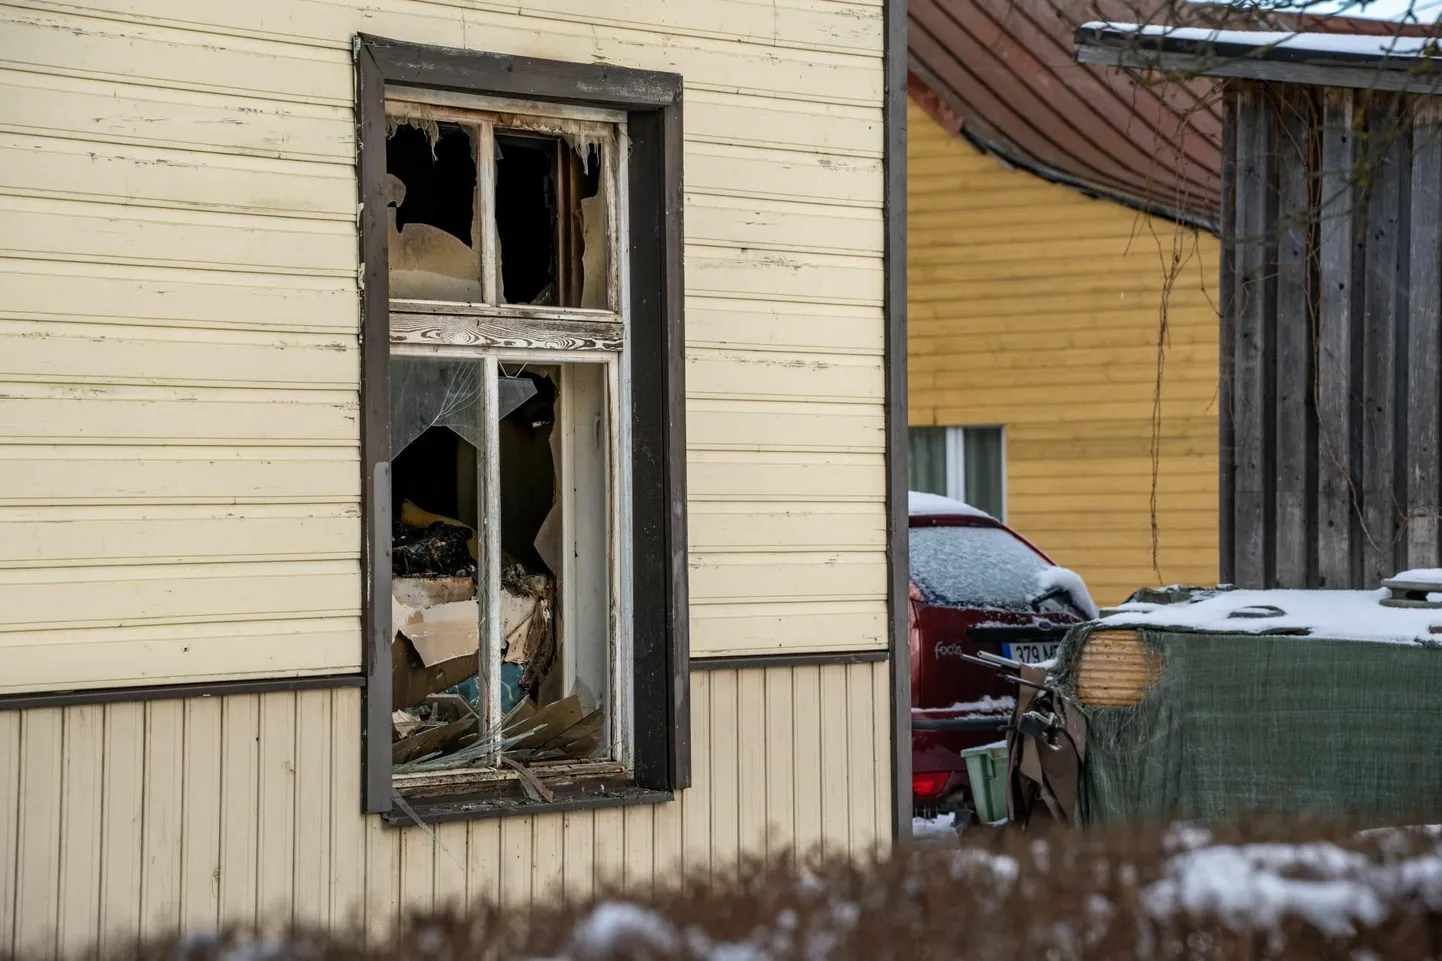 Mullu oli Pärnumaal ainus põlenguohver 65aastane mees, kes kaotas elu märtsi alguses Pärnus Tallinna maanteel elamus puhkenud tulekahjus.